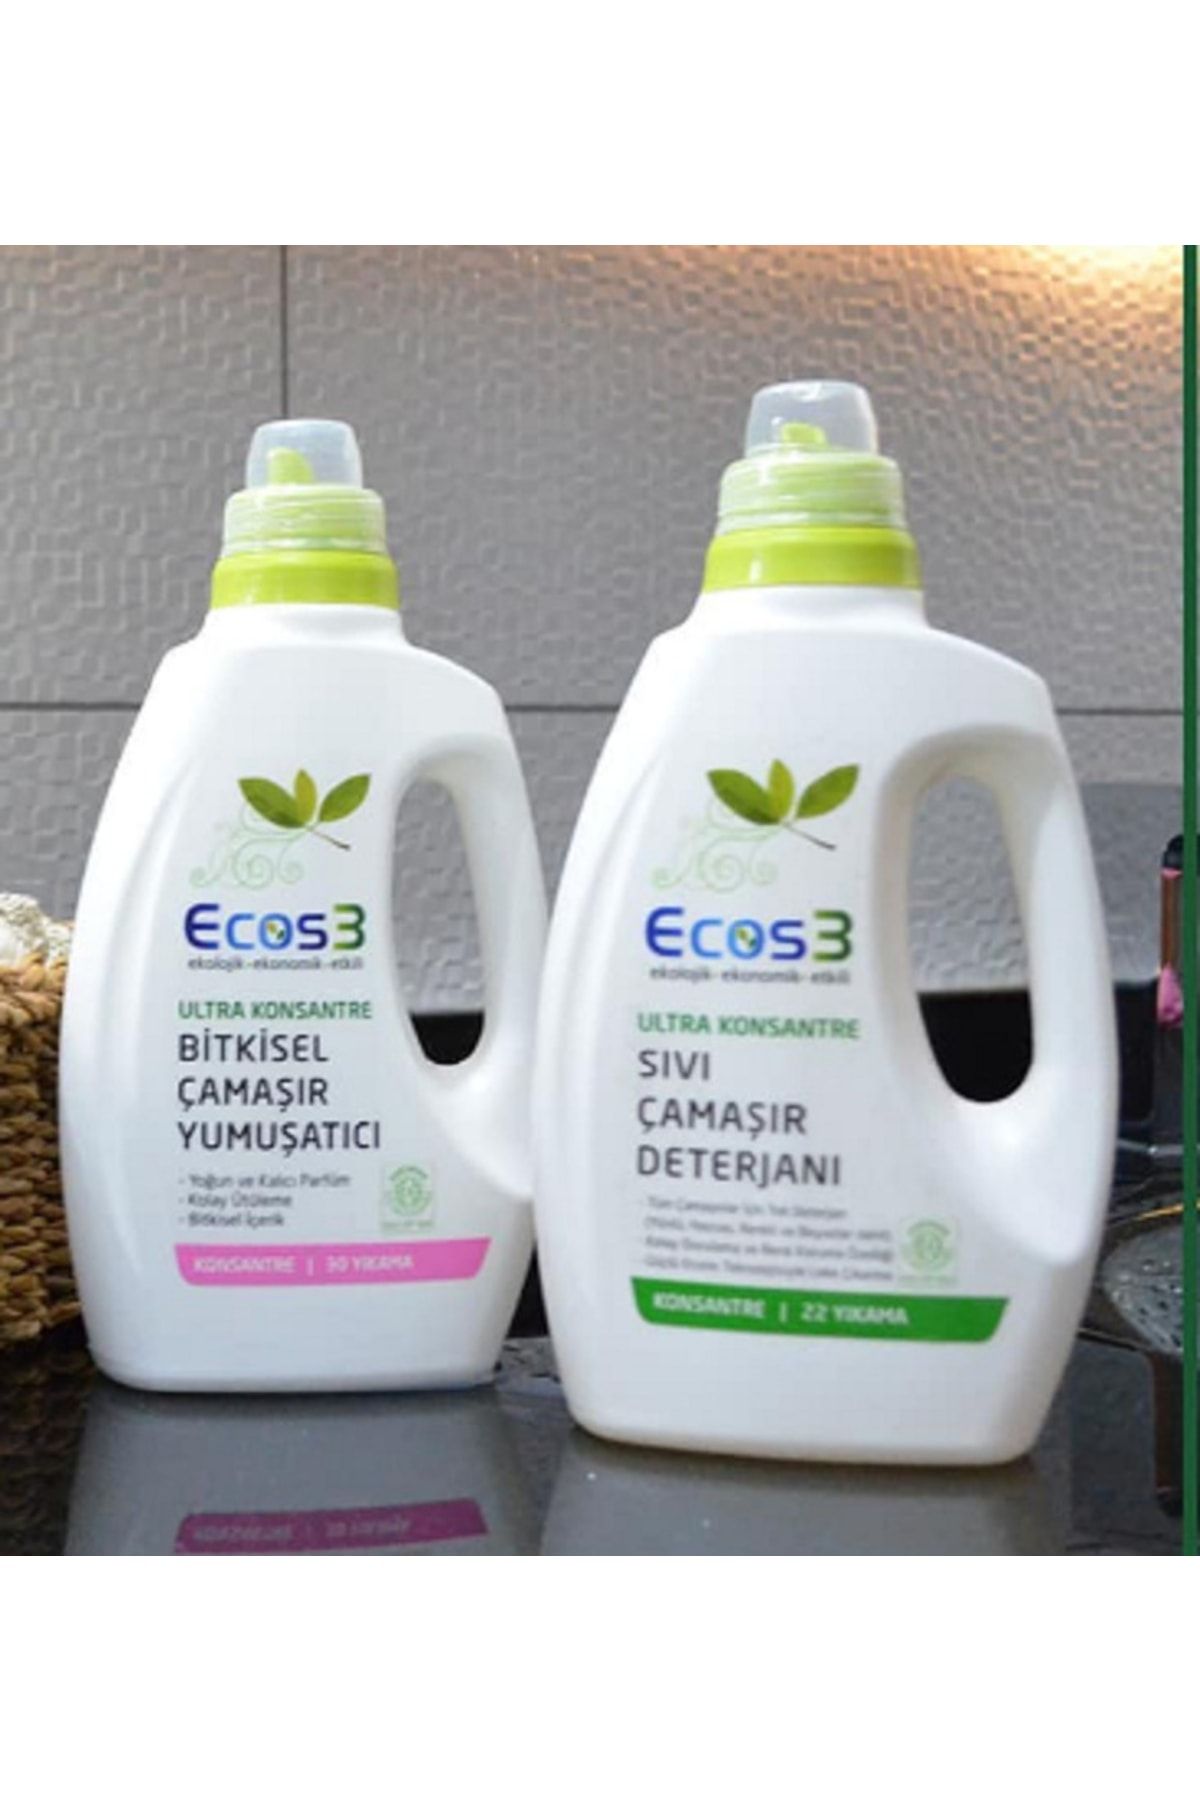 Ecos3 Çamaşır Yumuşatıcı (30 Yıkama) + Organik Sıvı Çamaşır Deterjanı (22 Yıkama) - Ilaç Kutusu Hediyeli